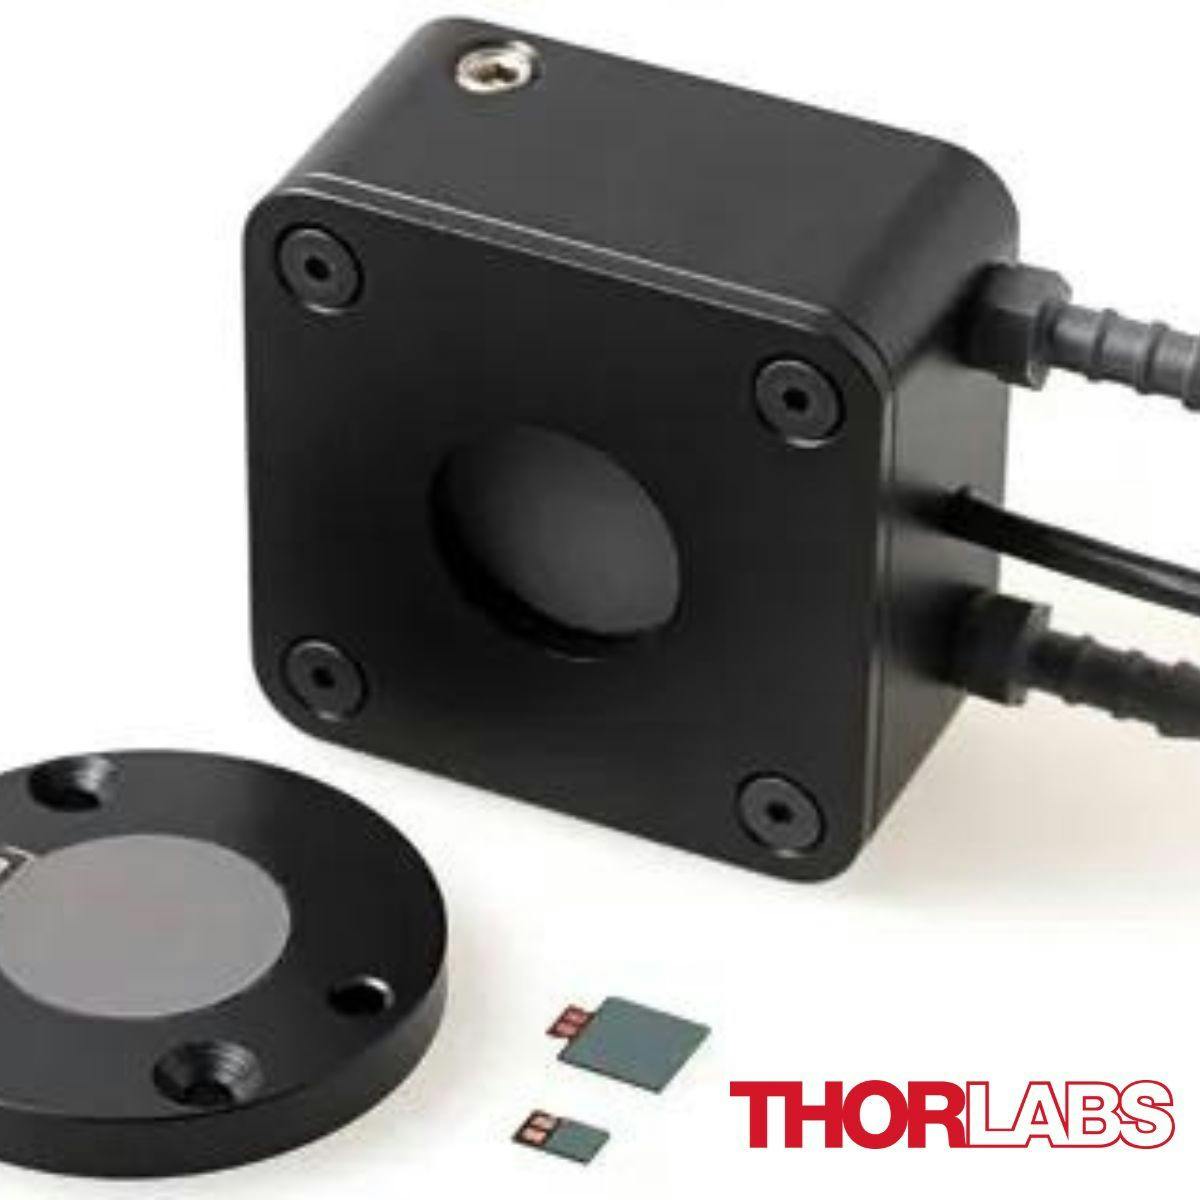 Thorlabs C-series thermal power sensors